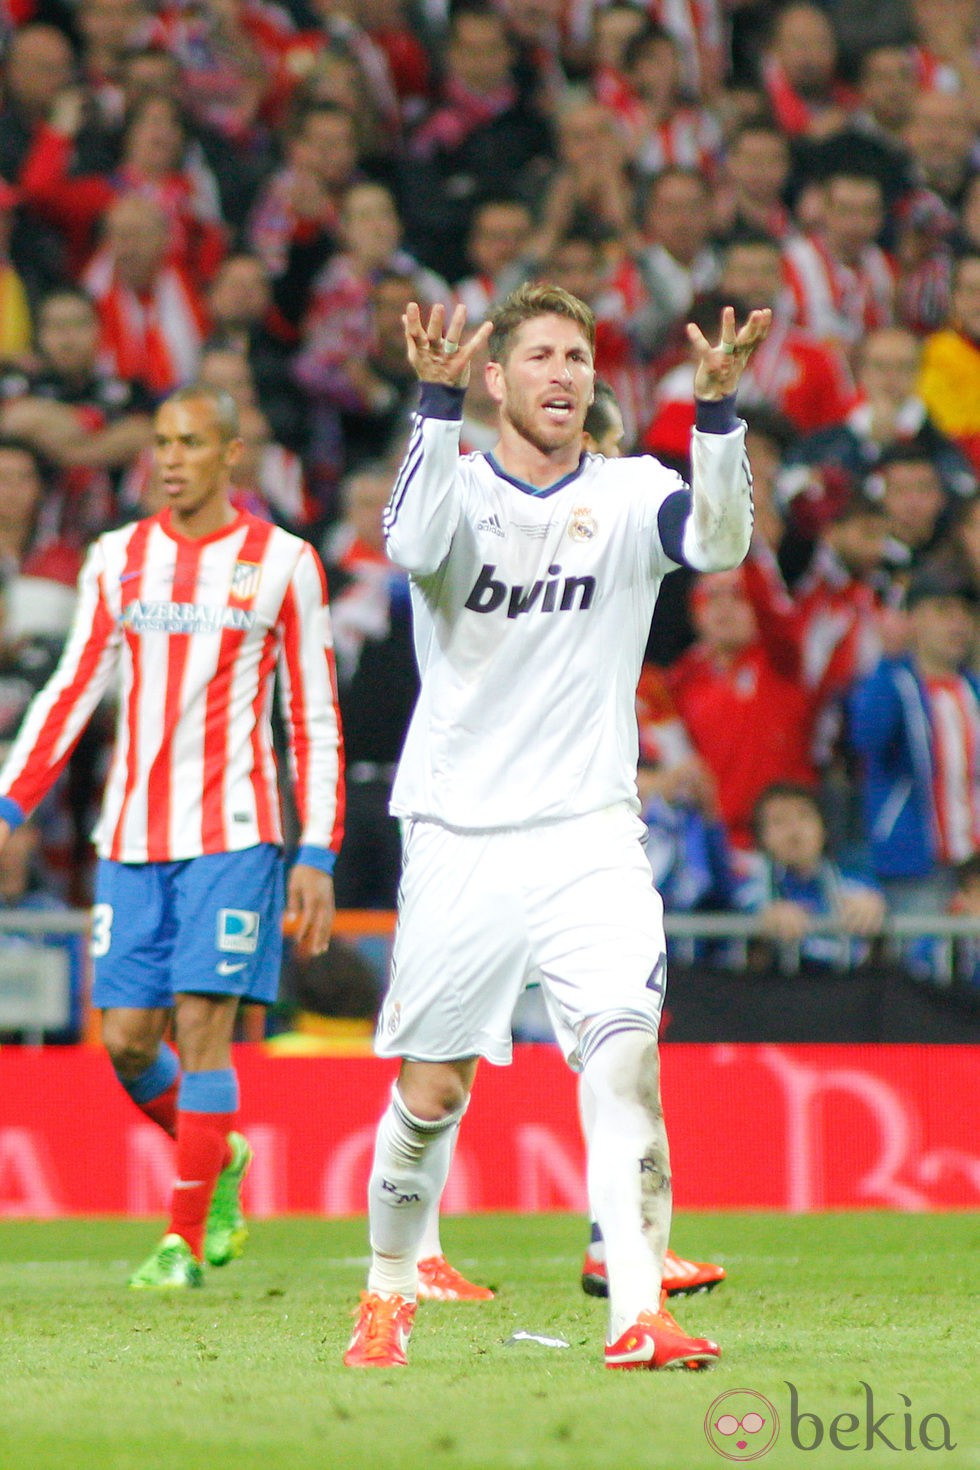 Sergio Ramos en la final de la Copa del Rey 2013